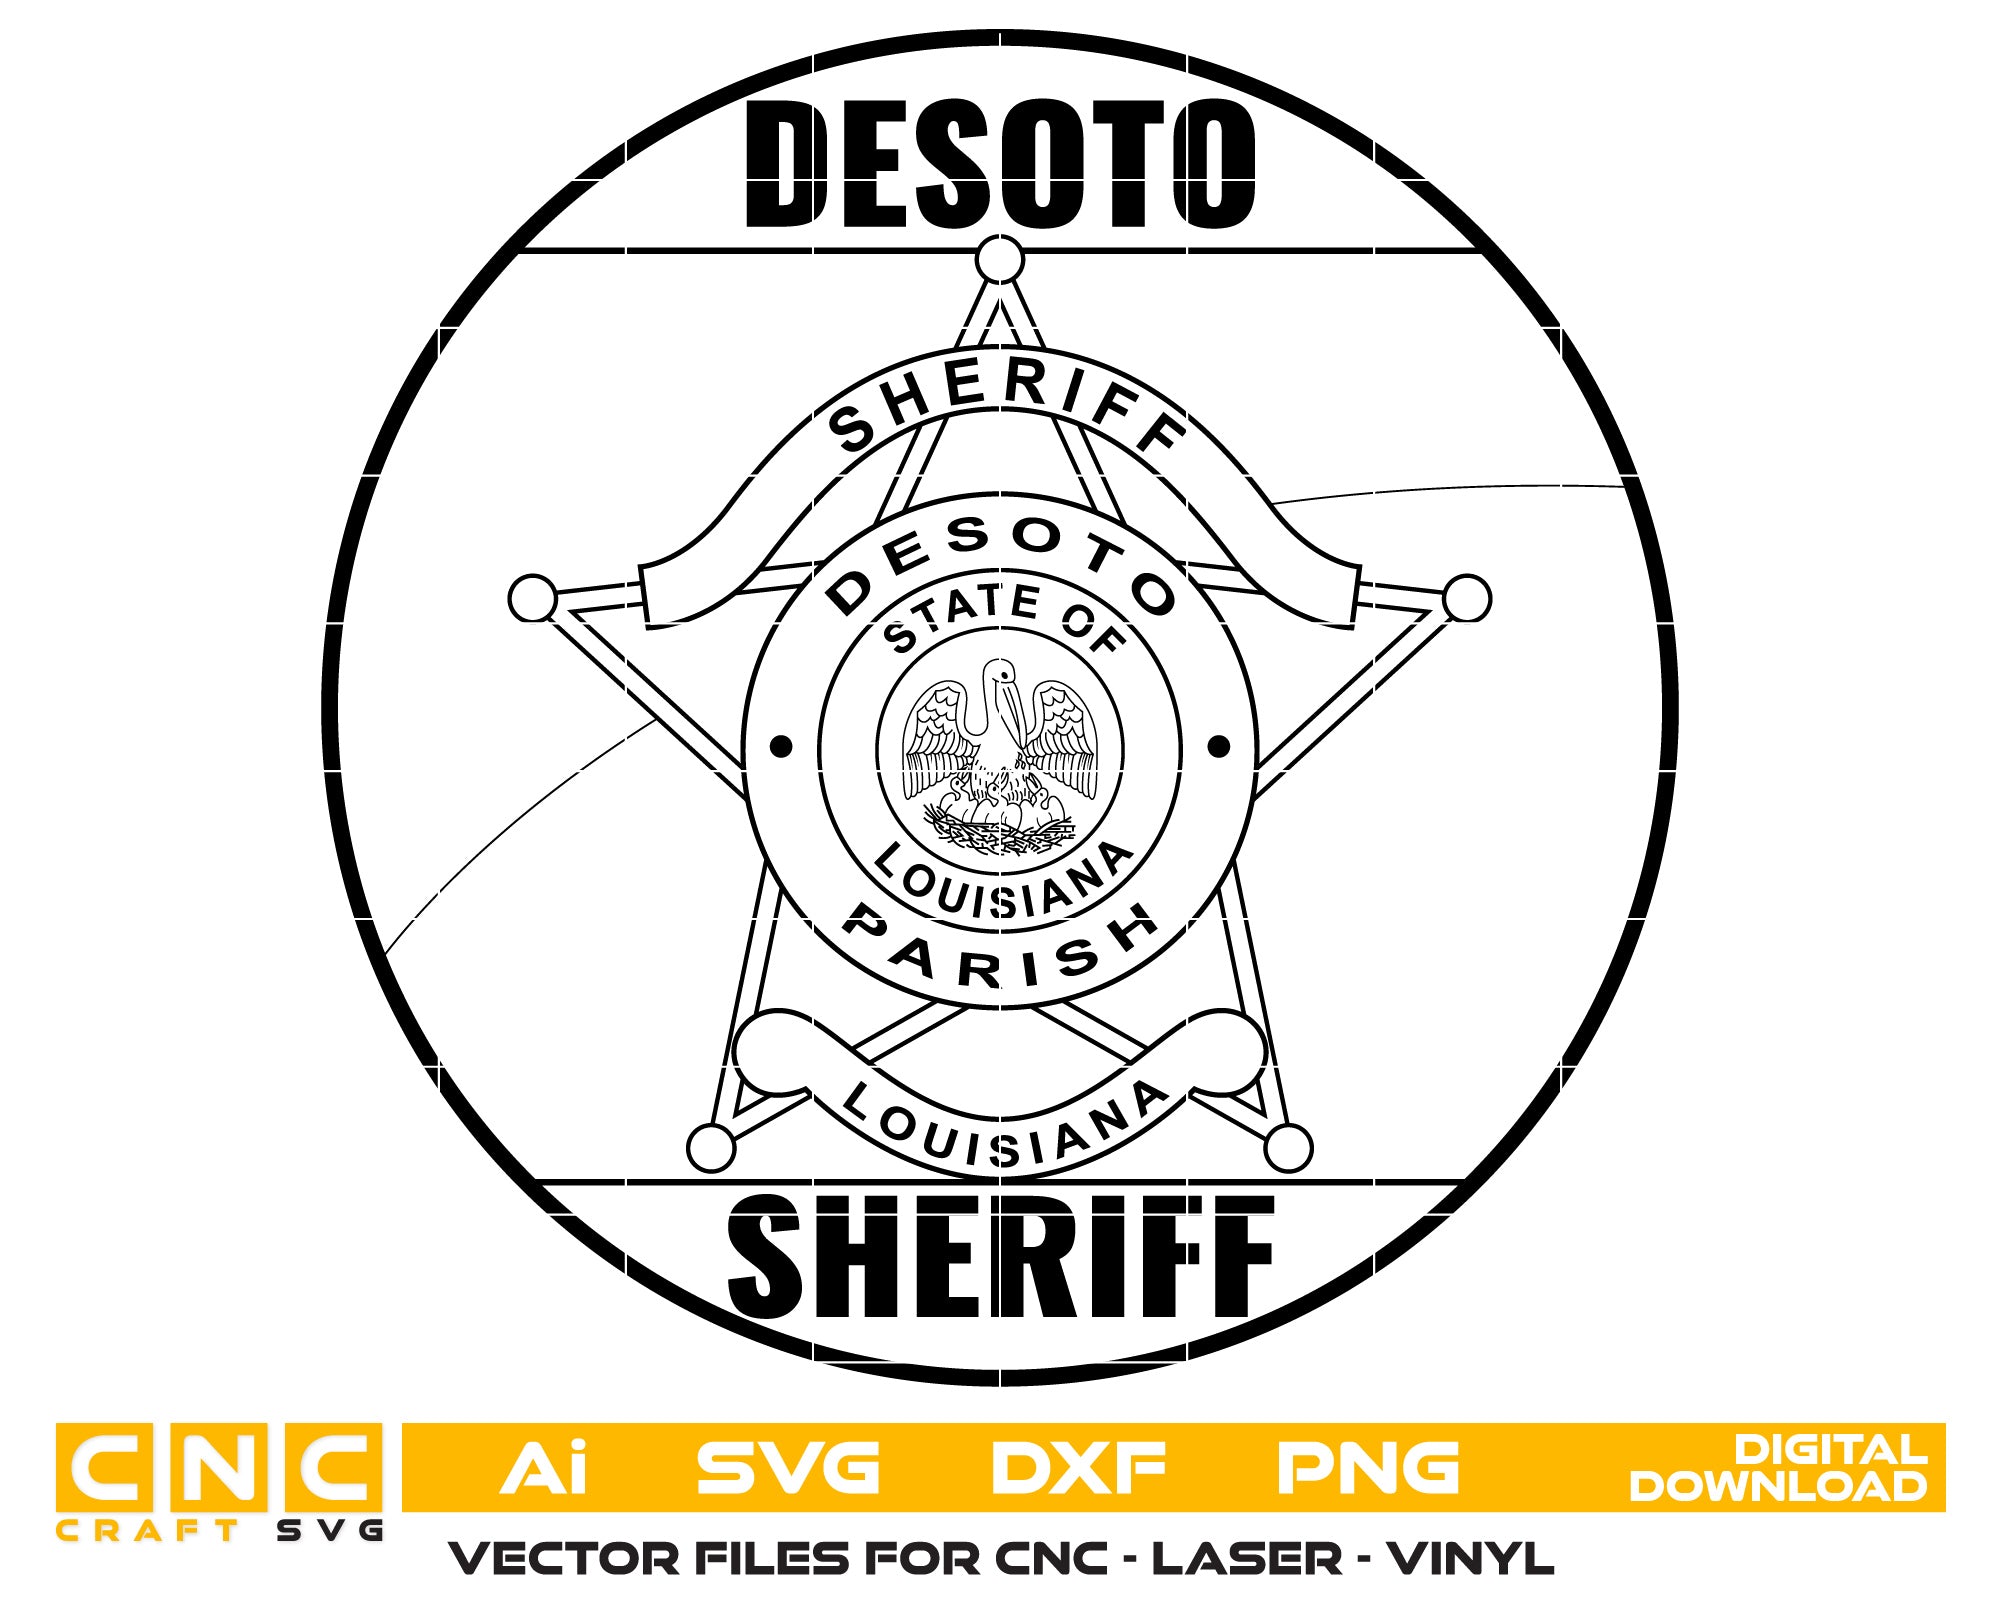 Louisiana Desoto Parise Sheriff Badge Vector art